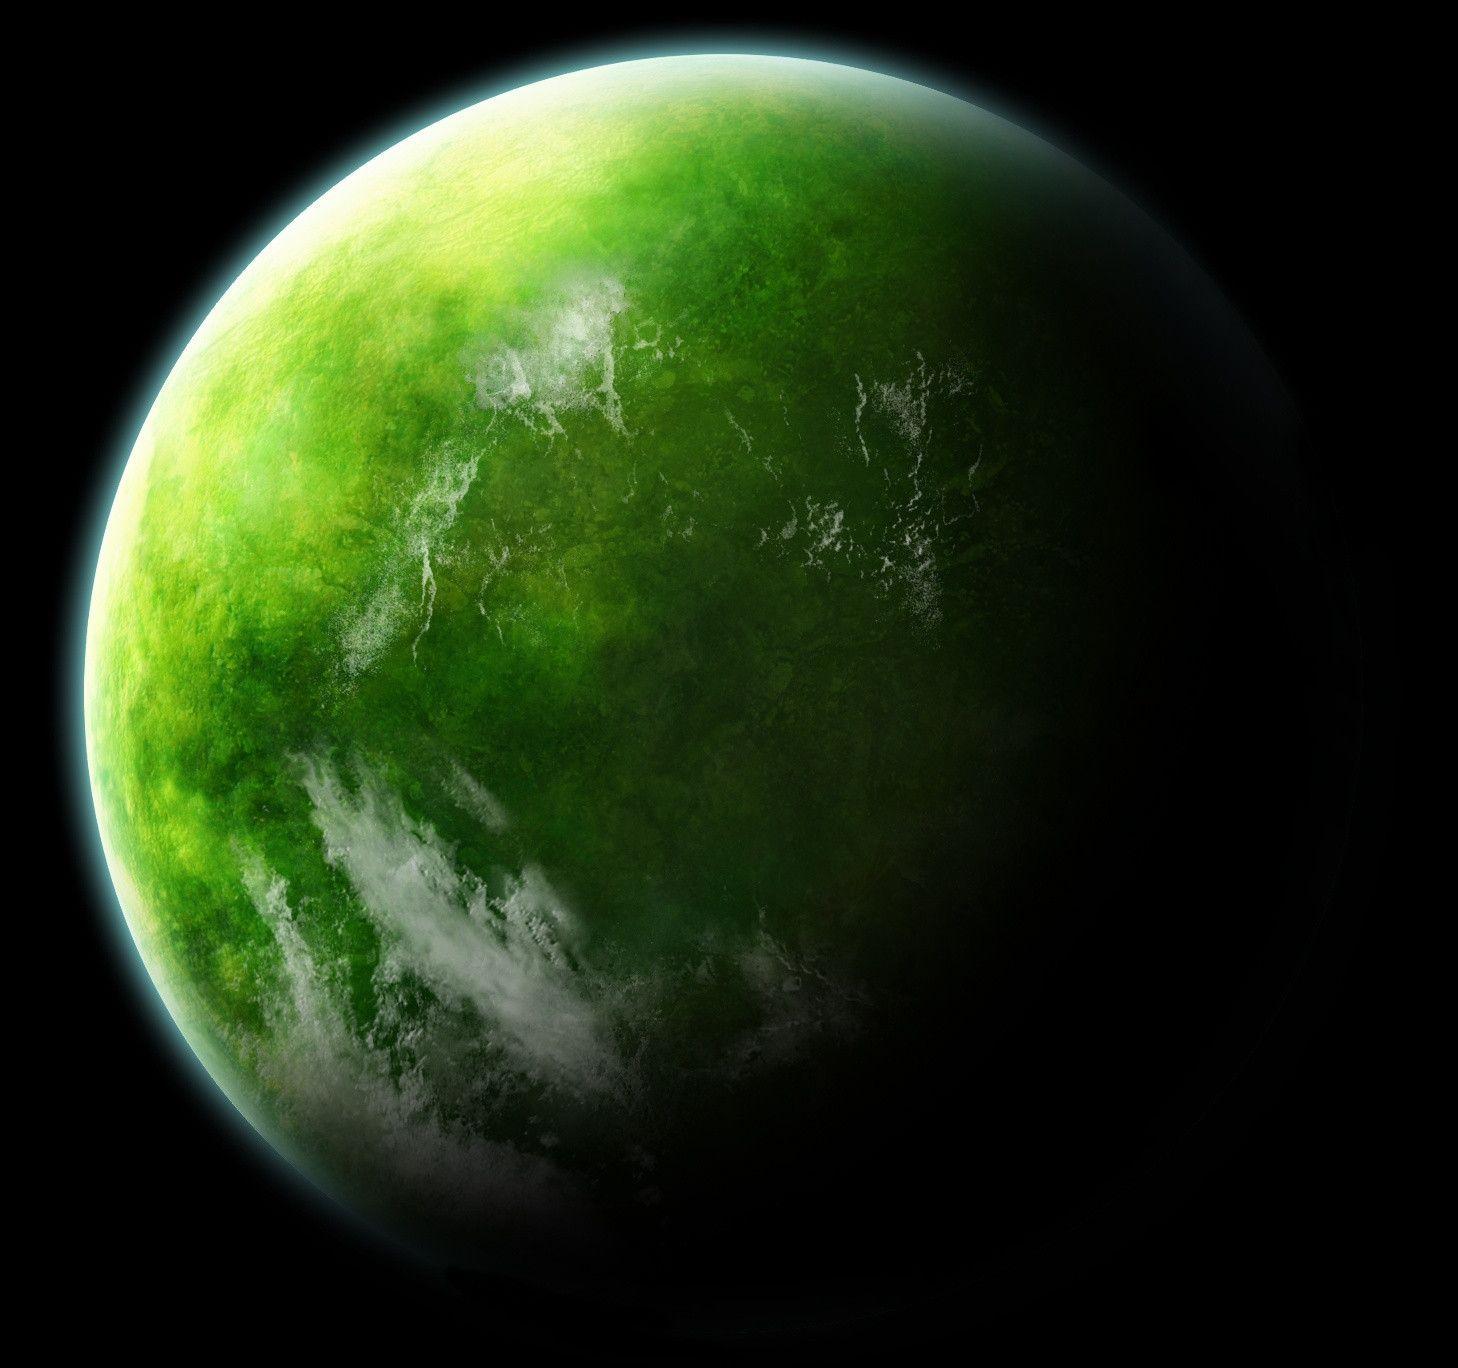 Download 41 Iphone Wallpaper Planet Green Gambar Gratis Terbaru Postsid